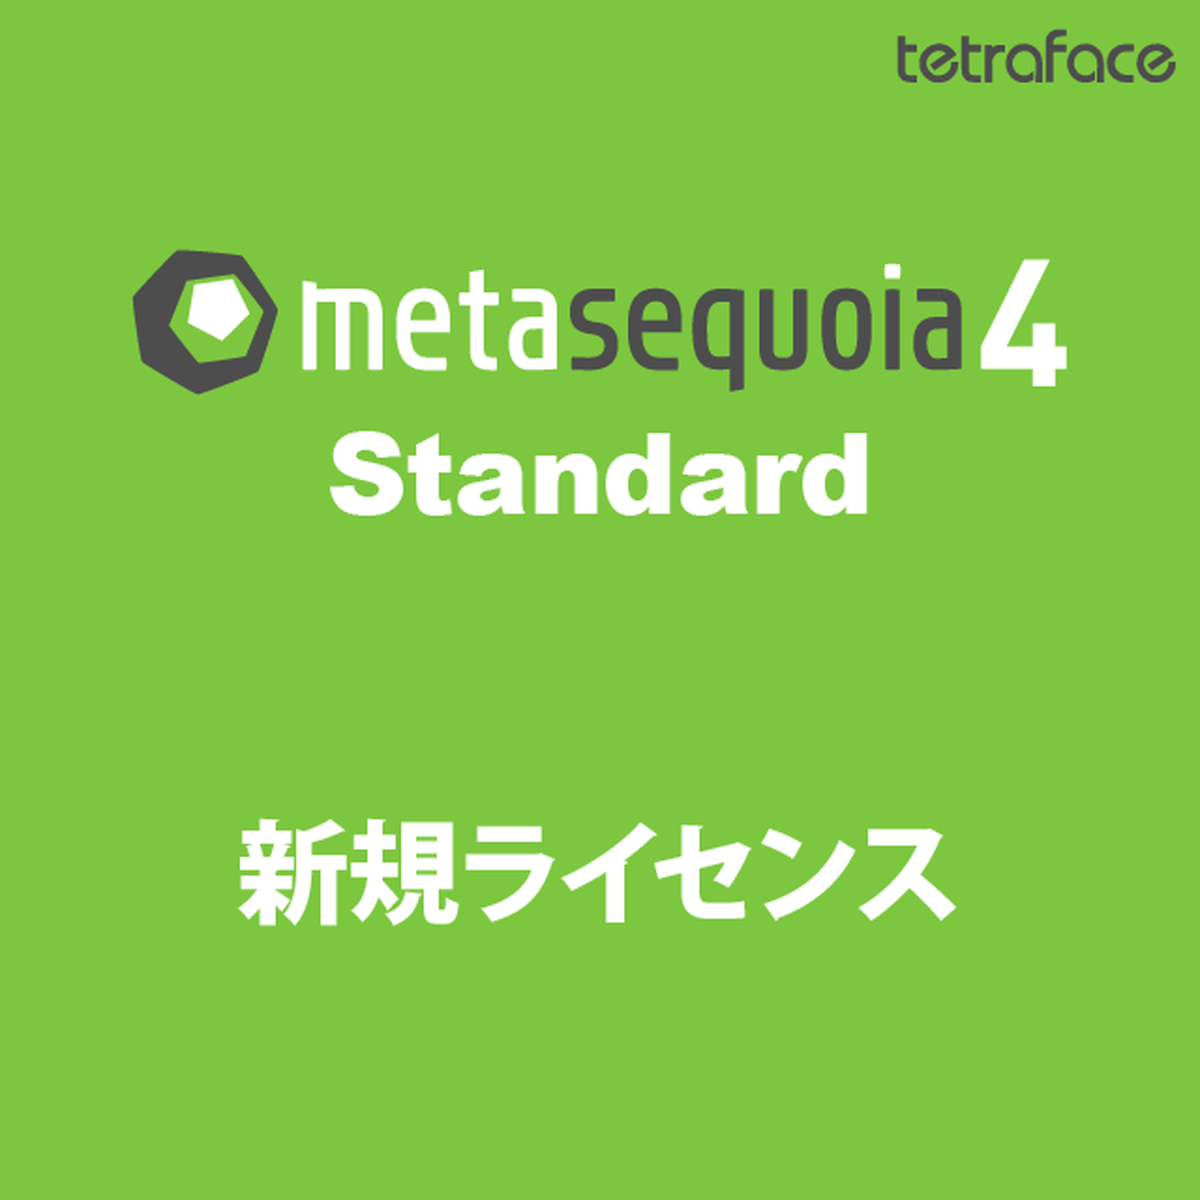 metasequoia 4.5.6